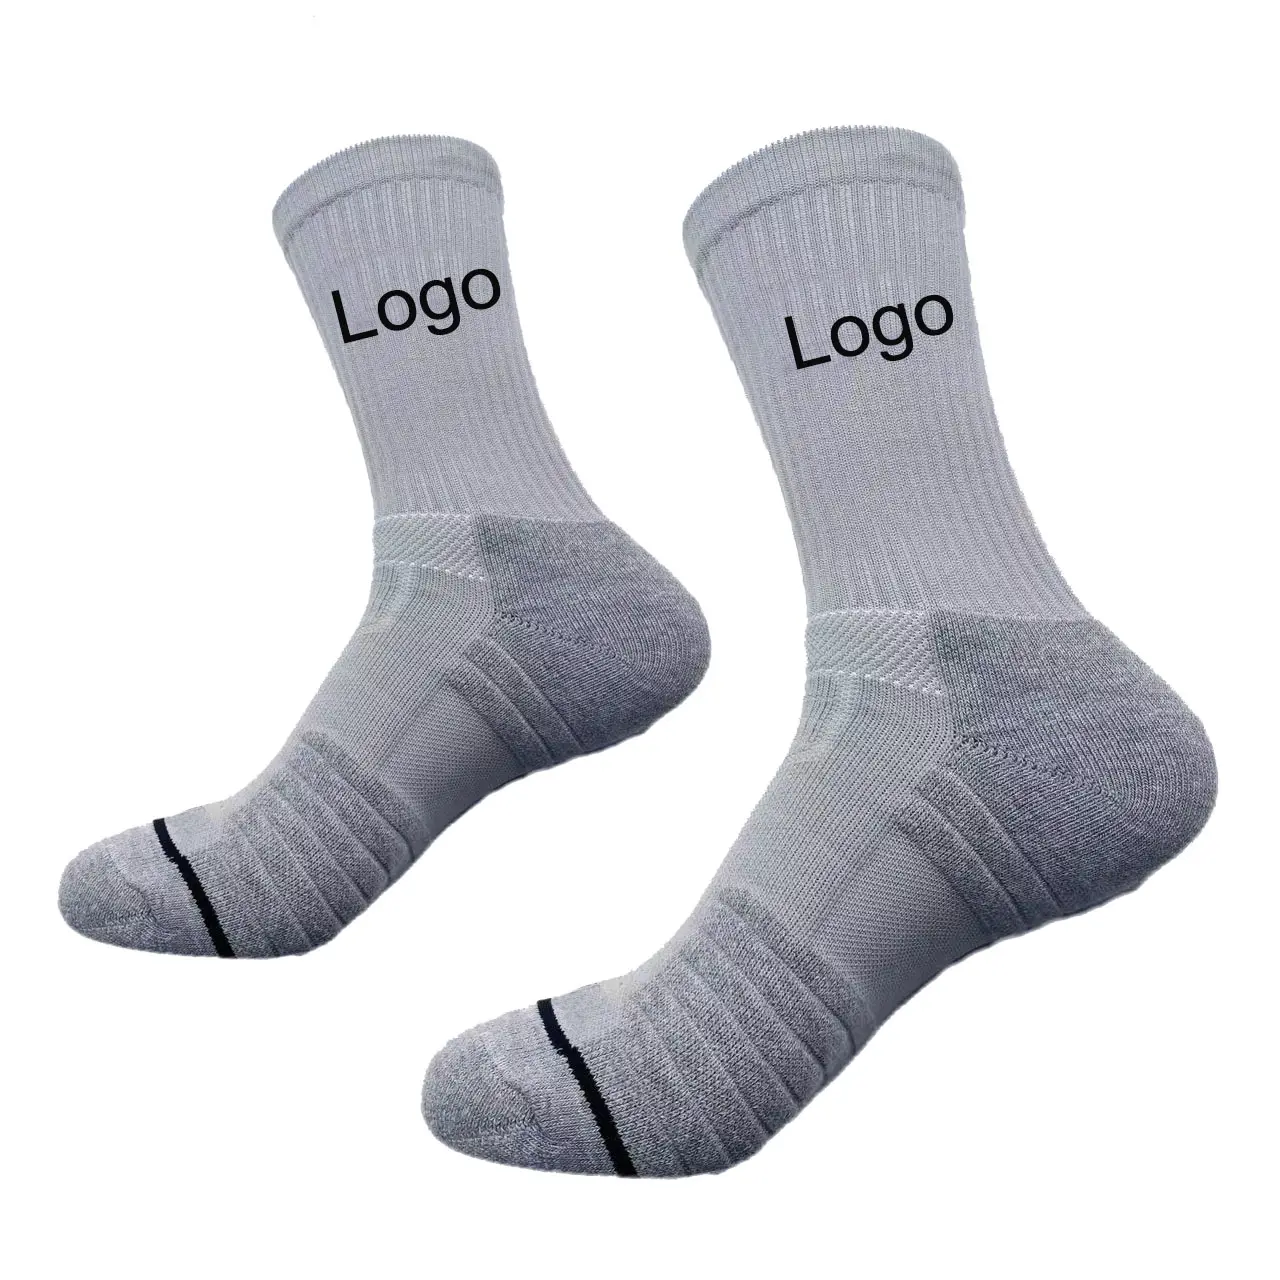 Yüksek kaliteli sıkıştırma spor özel tasarım ekip çorap Unisex atletik spor renkli spor çorapları